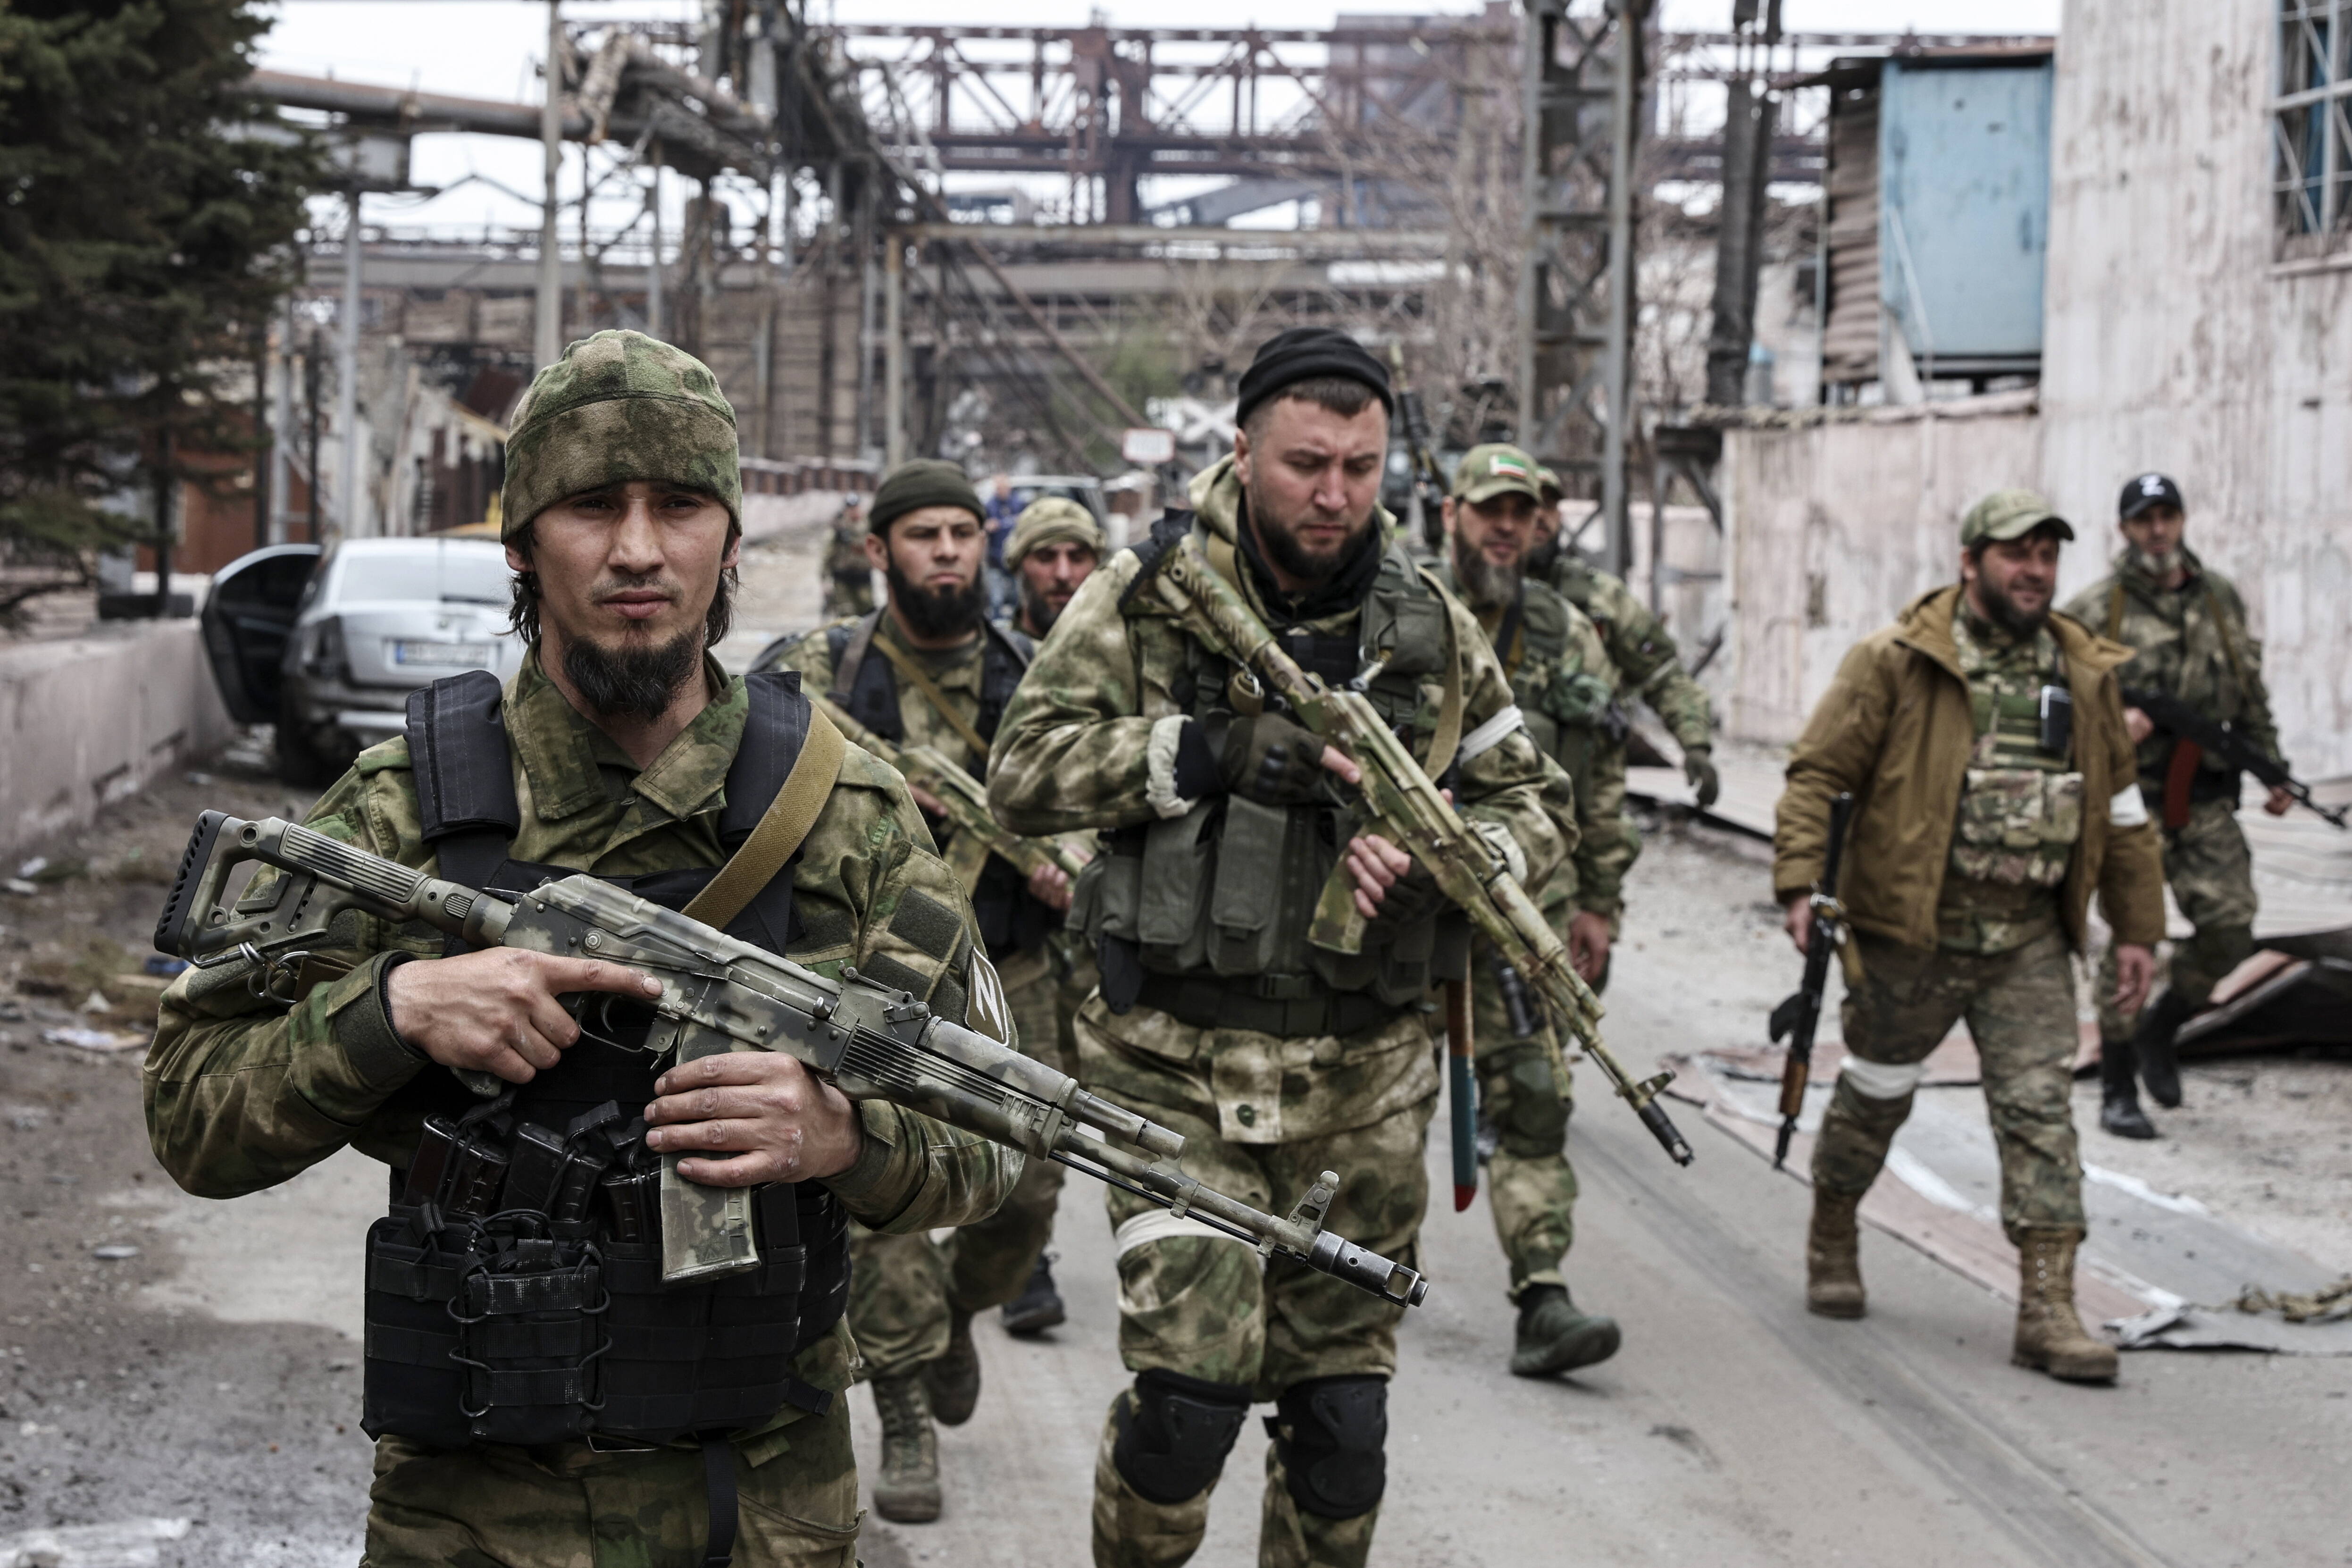 Război în Ucraina. Rezumatul evenimentelor, 18 aprilie 2022. A început marea bătălie de la Donbas